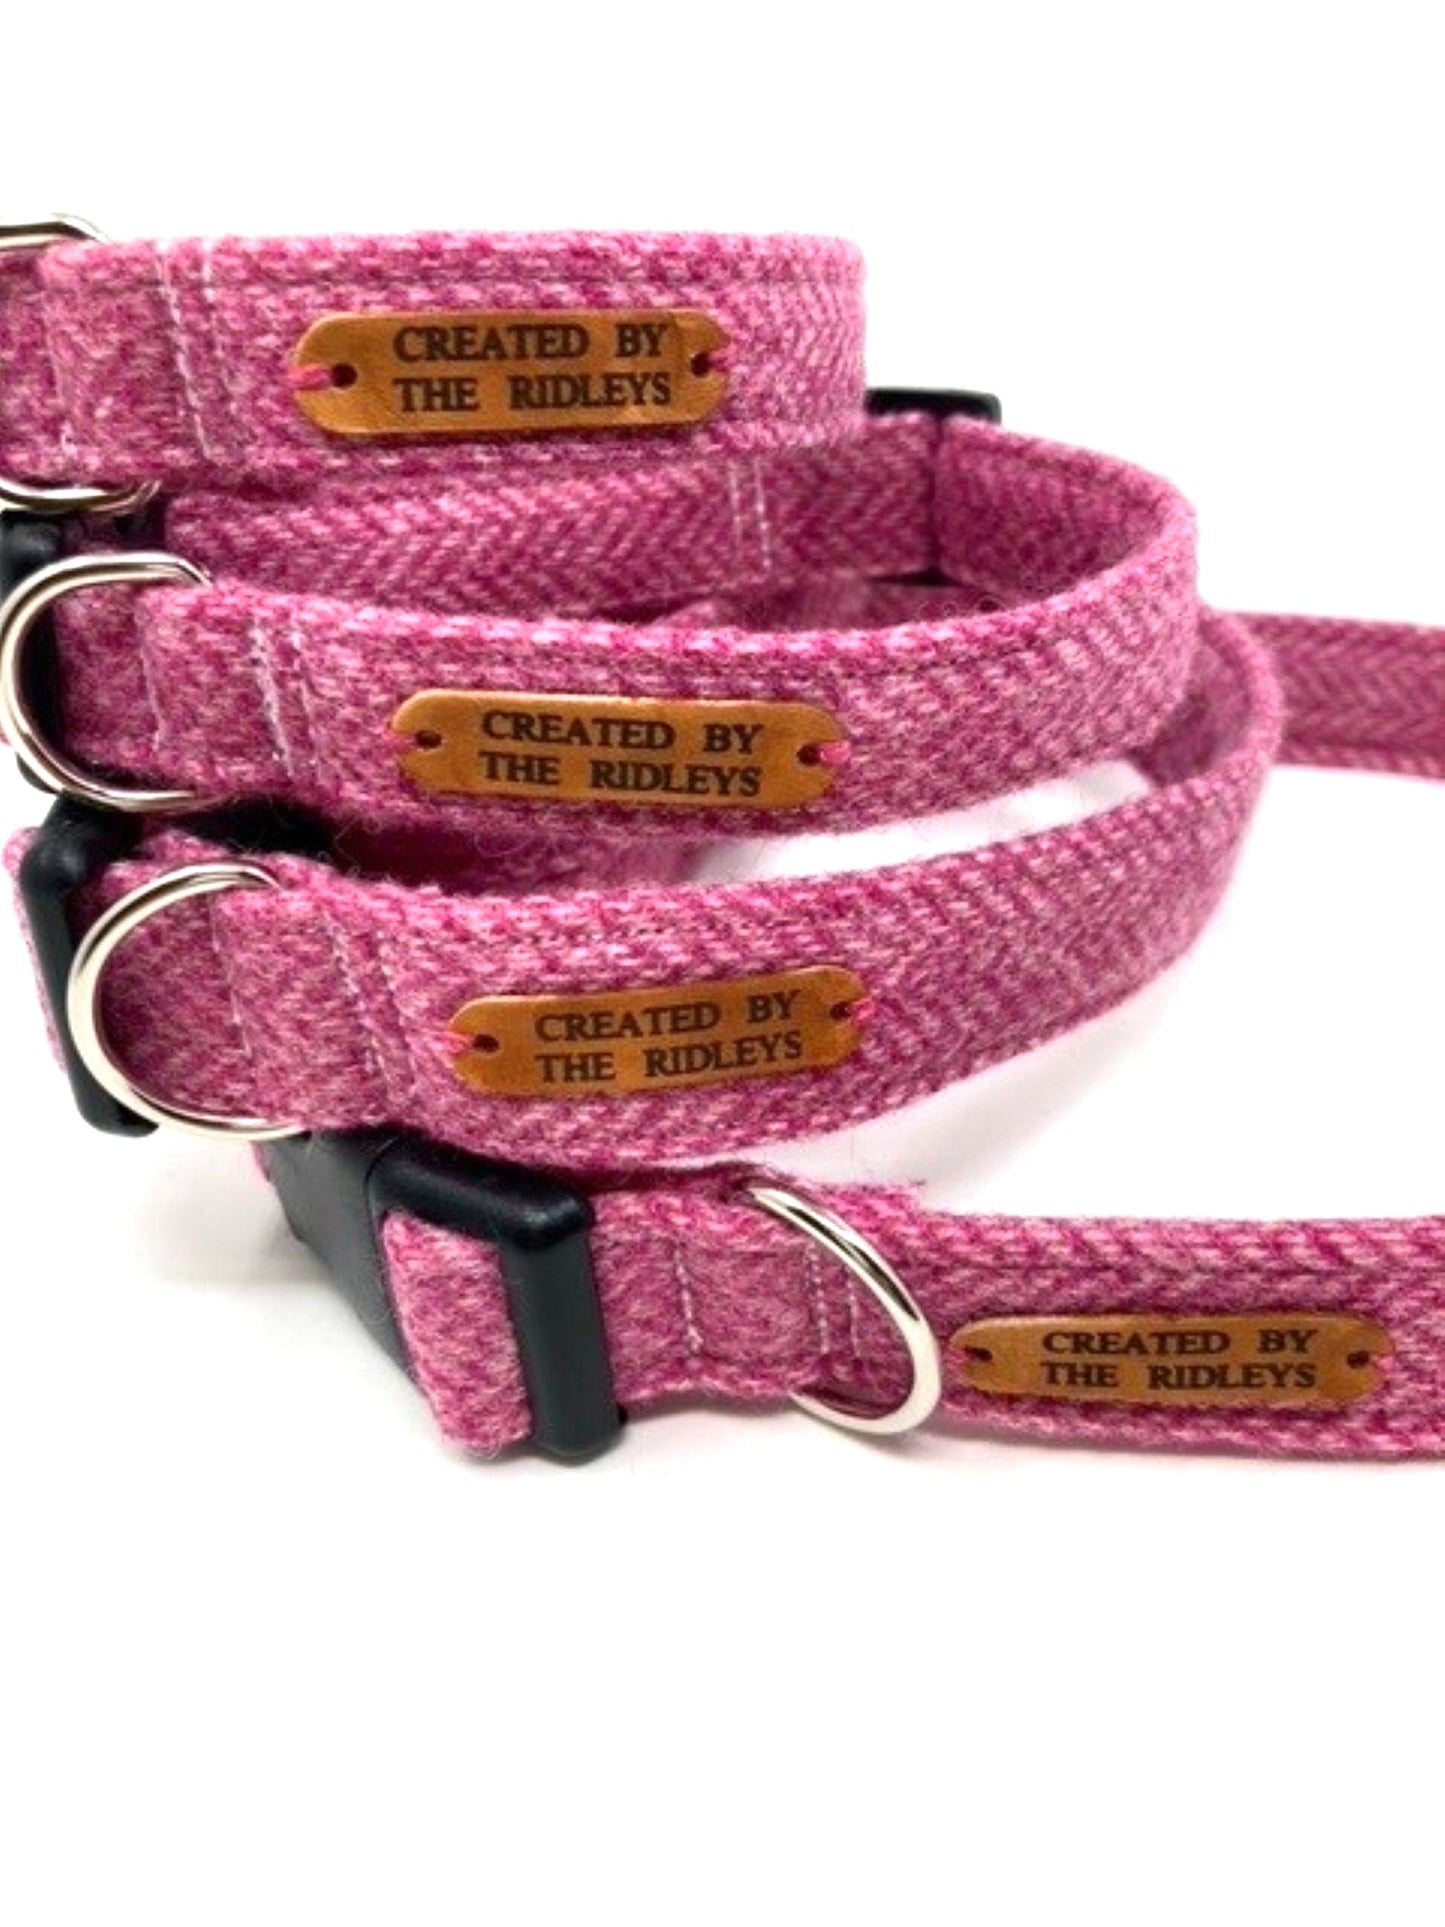 Tweed Dog Bow Tie - Pink Herringbone